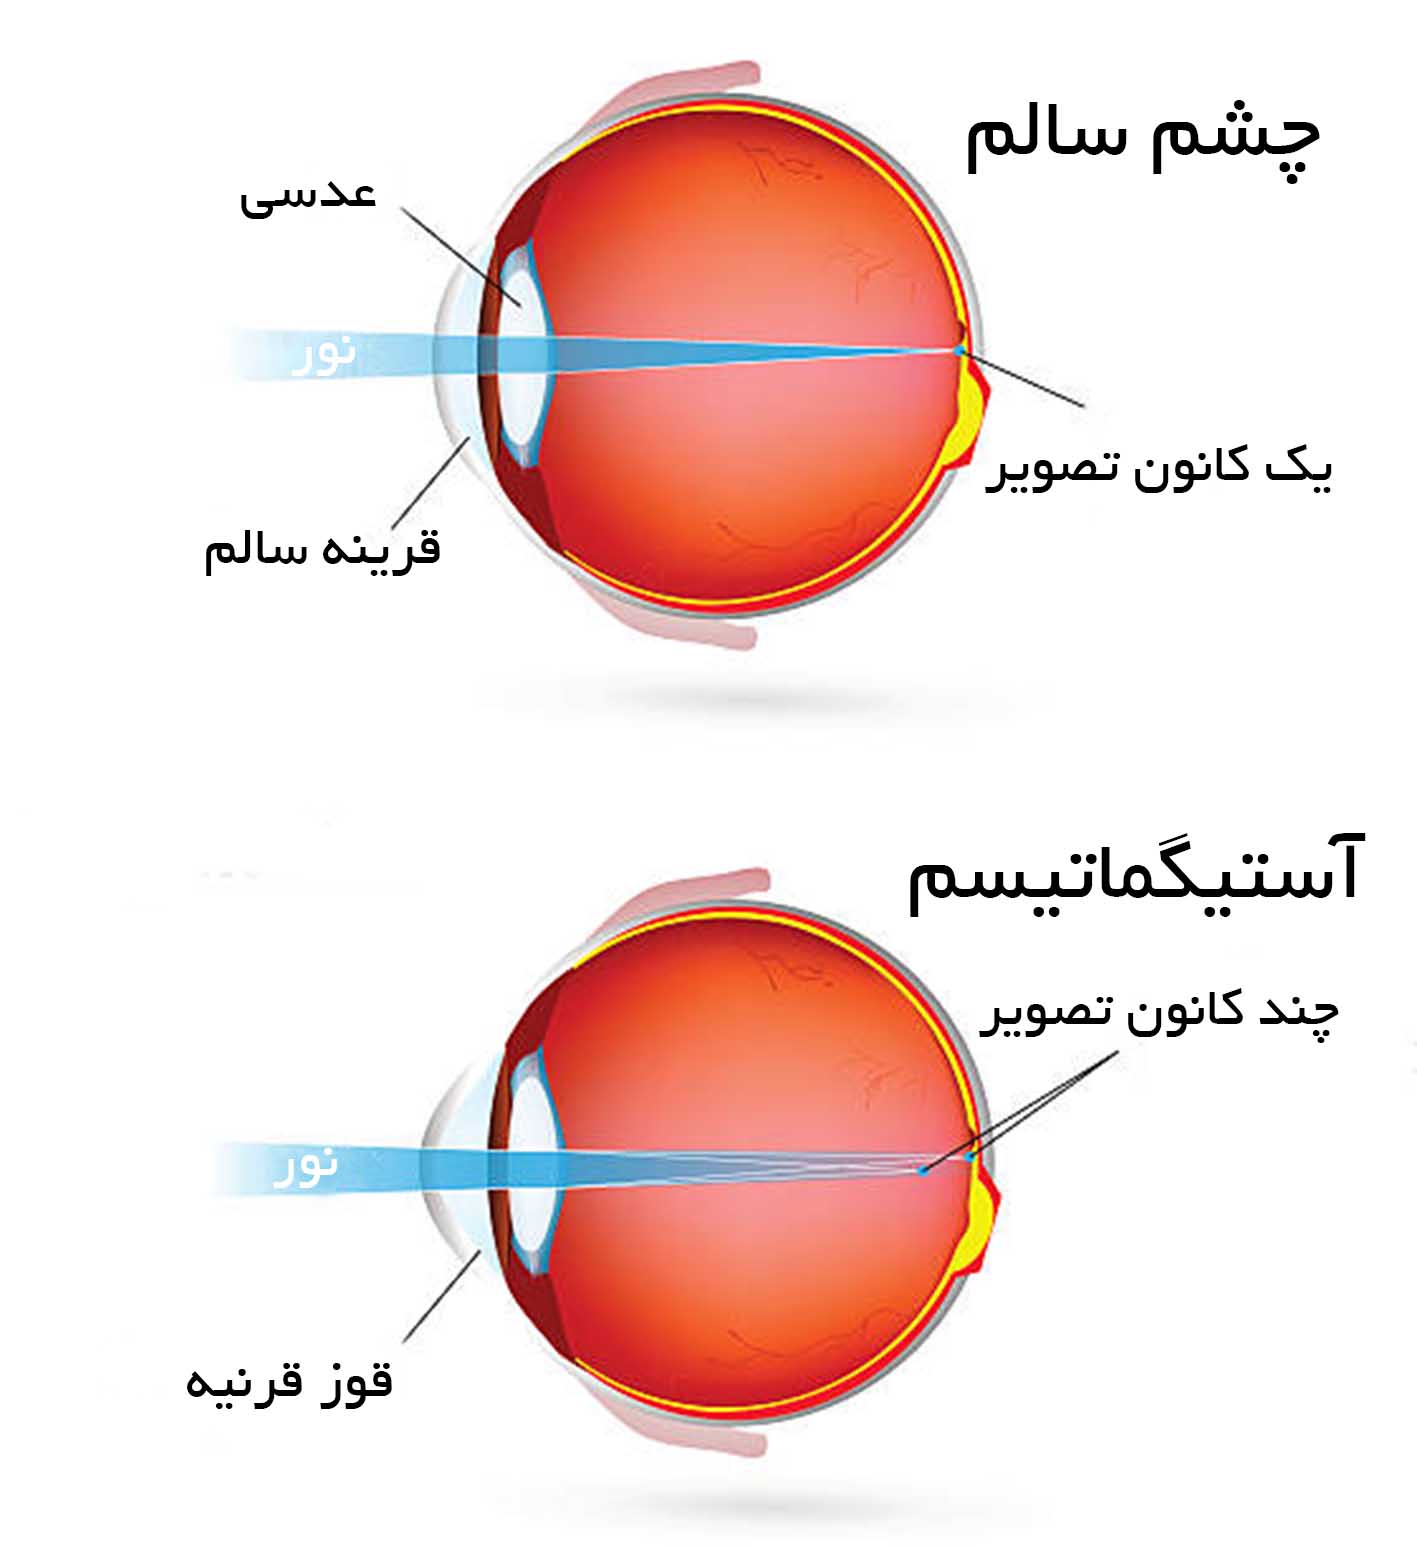 تست آستیگماتیسم آنلاین چشم با چارت مخصوص تشخیص